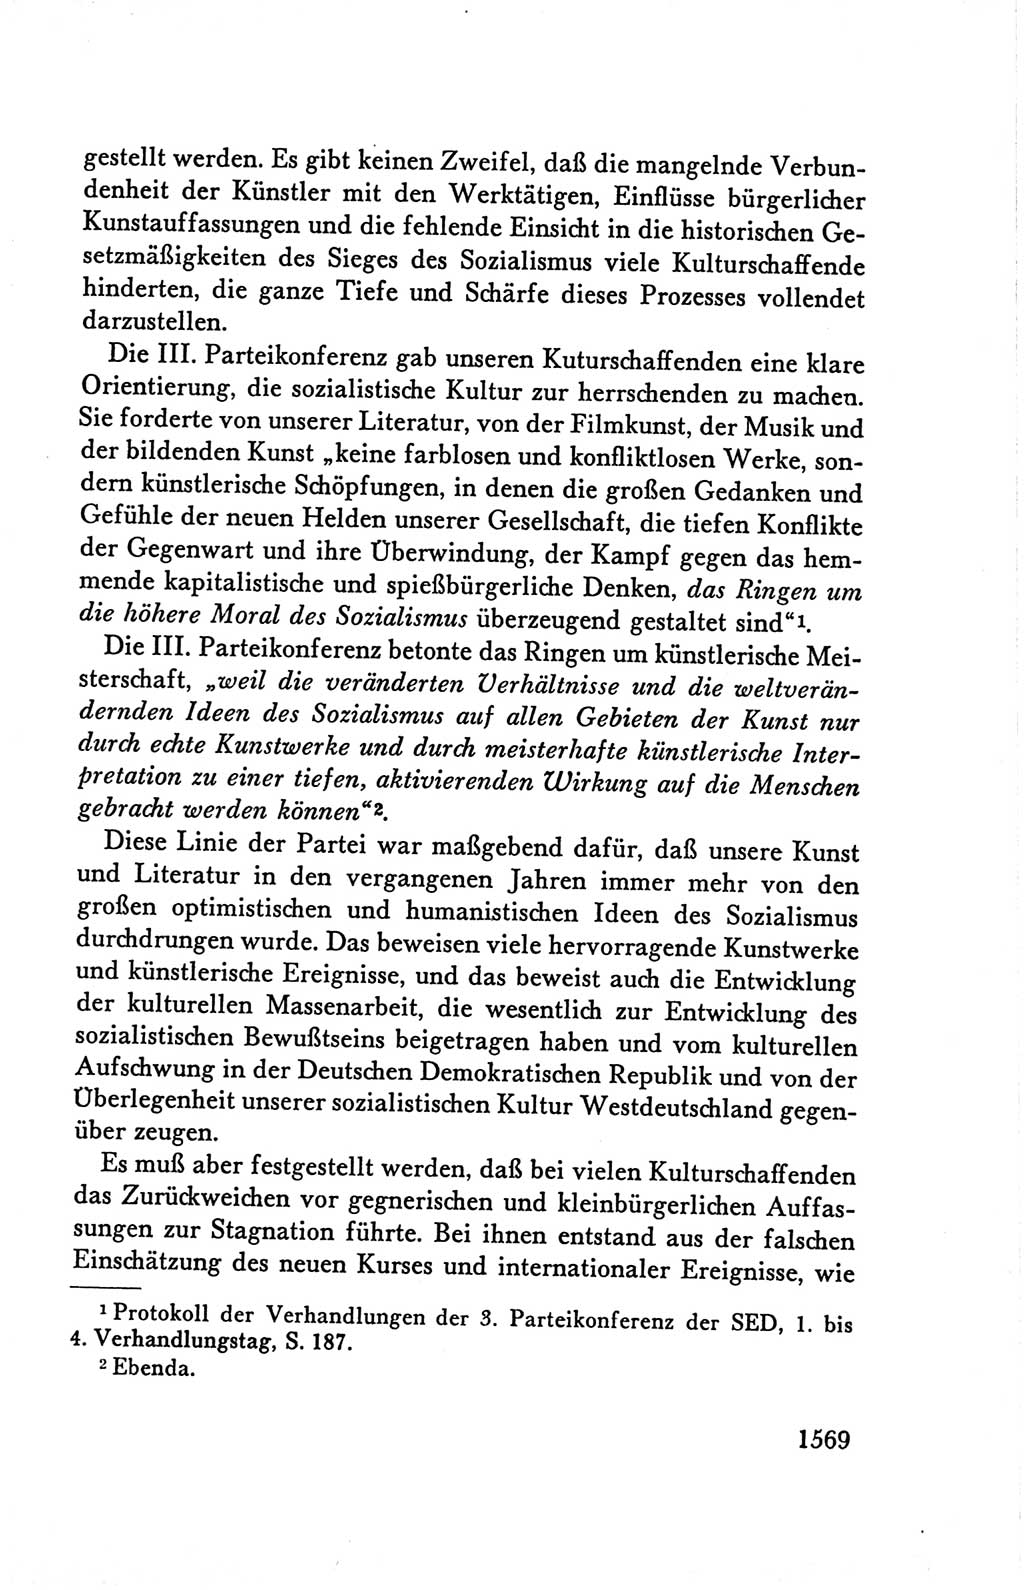 Protokoll der Verhandlungen des Ⅴ. Parteitages der Sozialistischen Einheitspartei Deutschlands (SED) [Deutsche Demokratische Republik (DDR)] 1958, Seite 1569